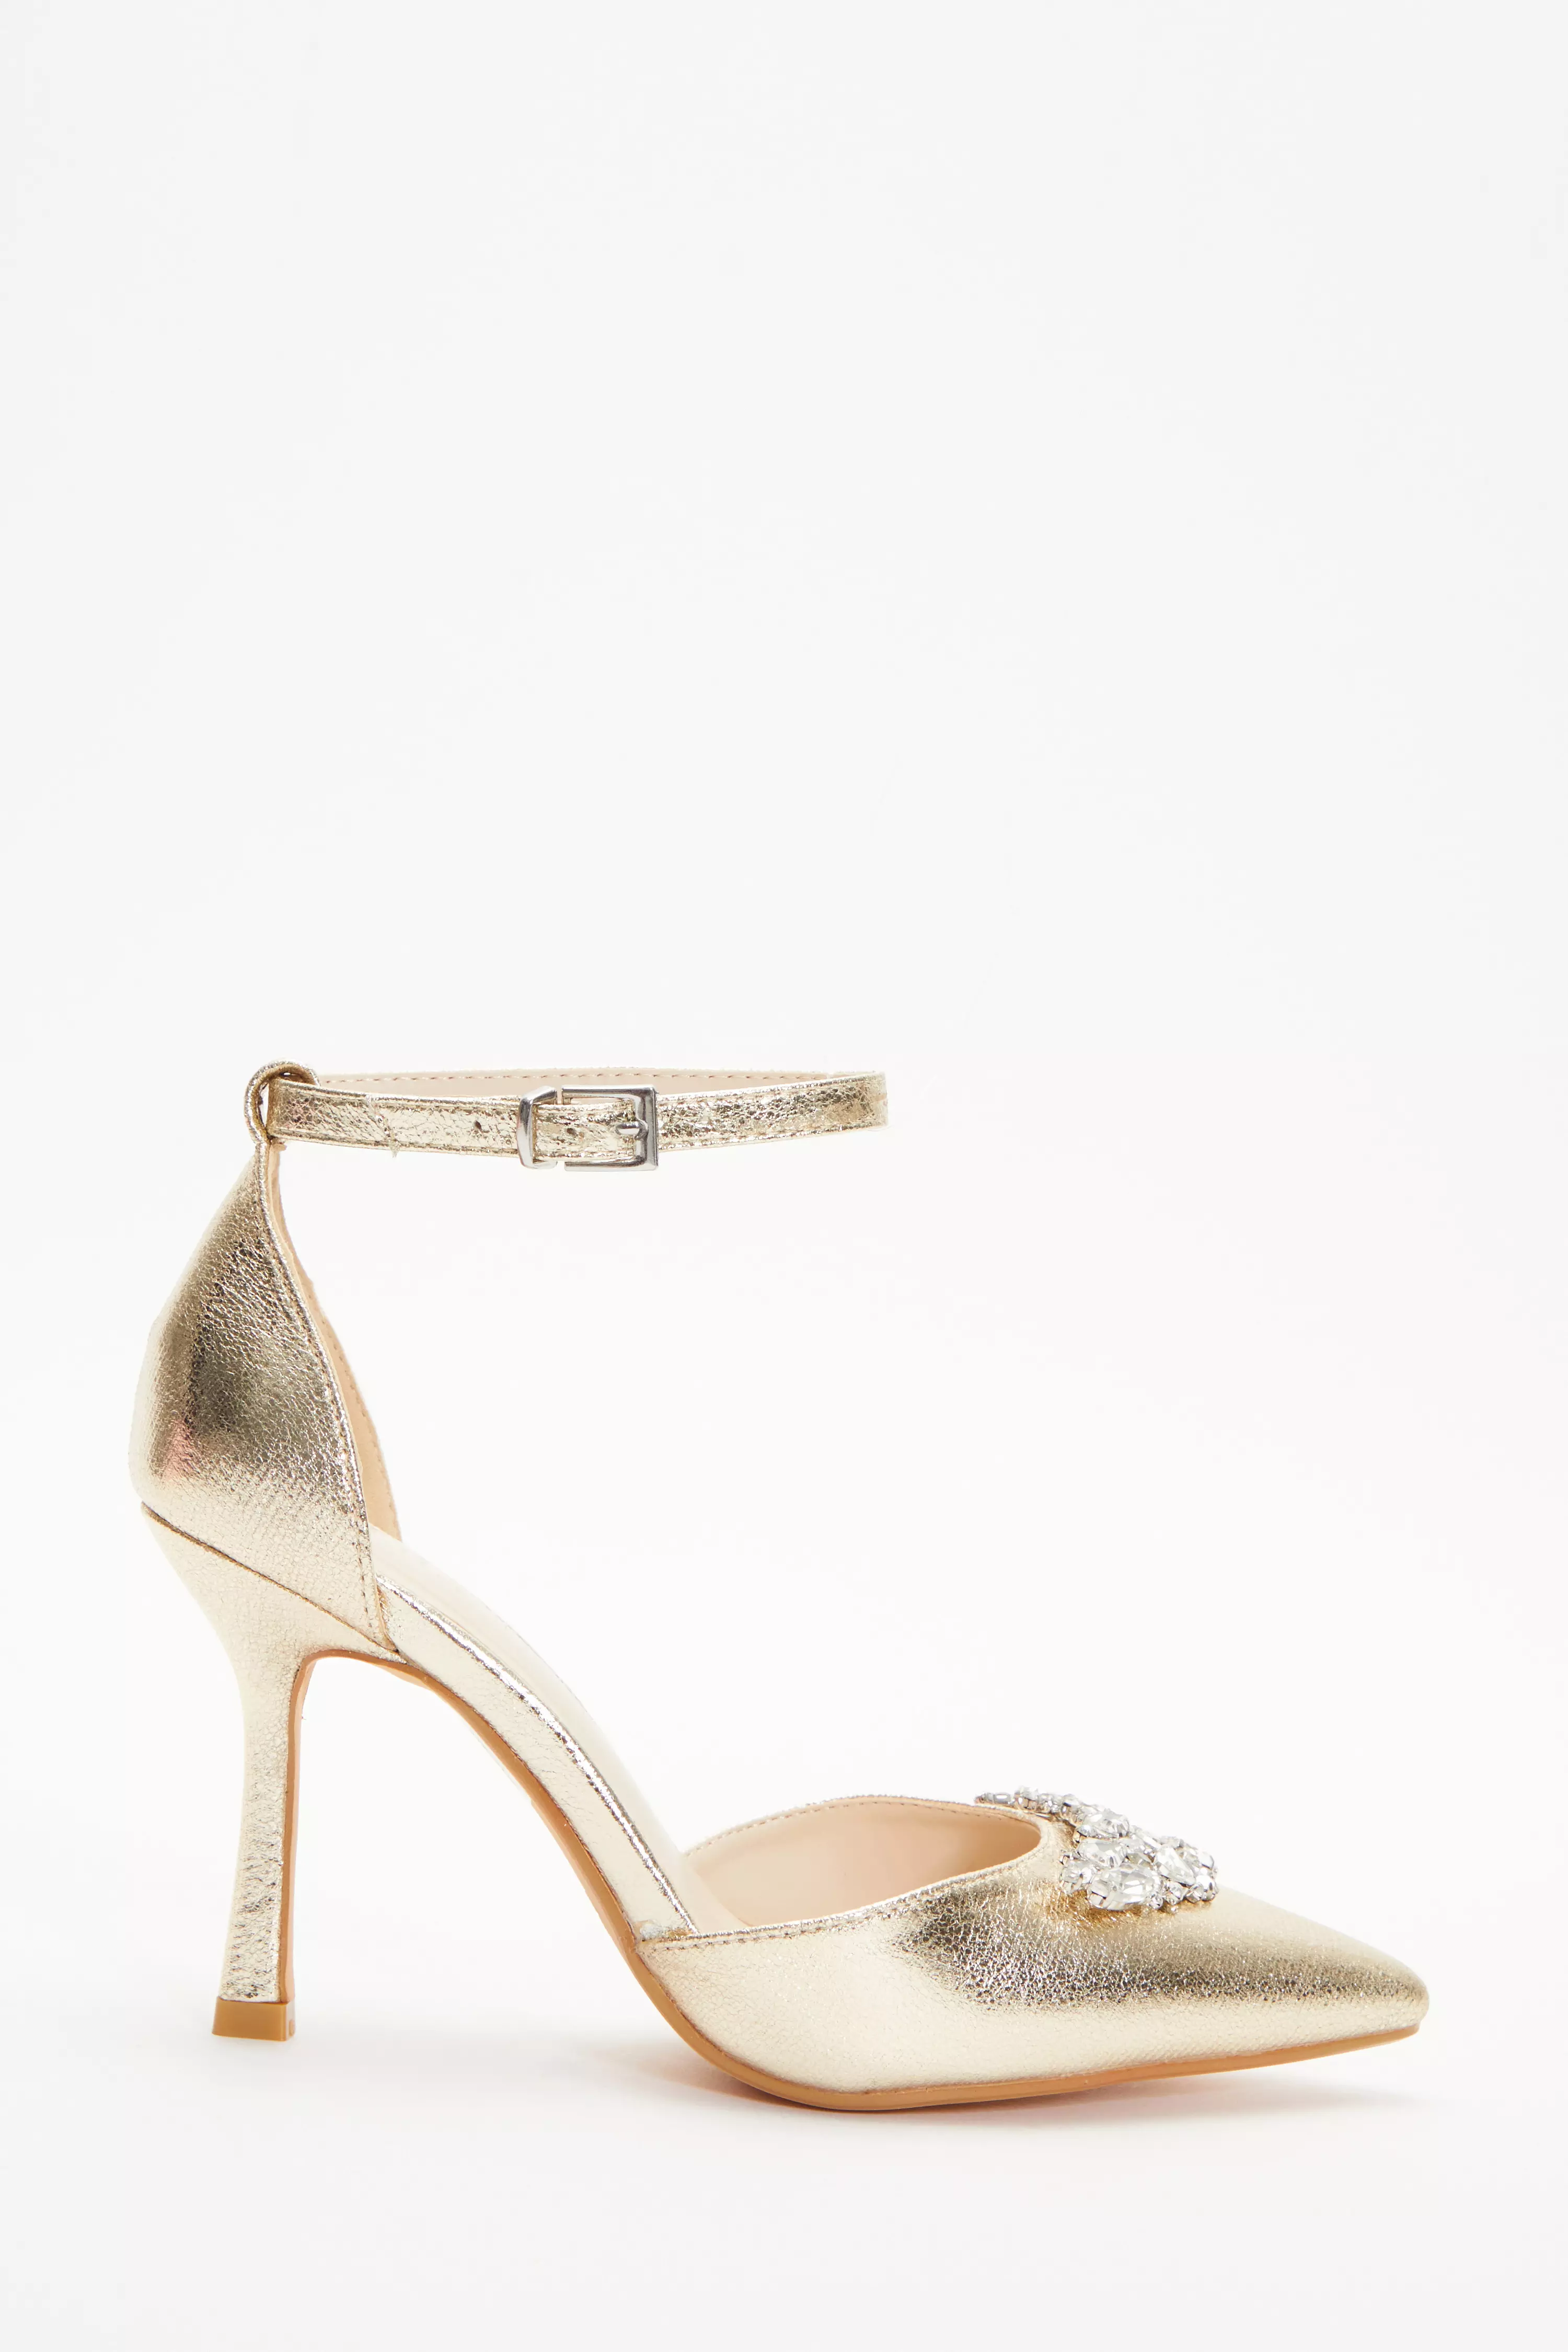 Wide Fit Gold Foil Diamante Court Heels - QUIZ Clothing